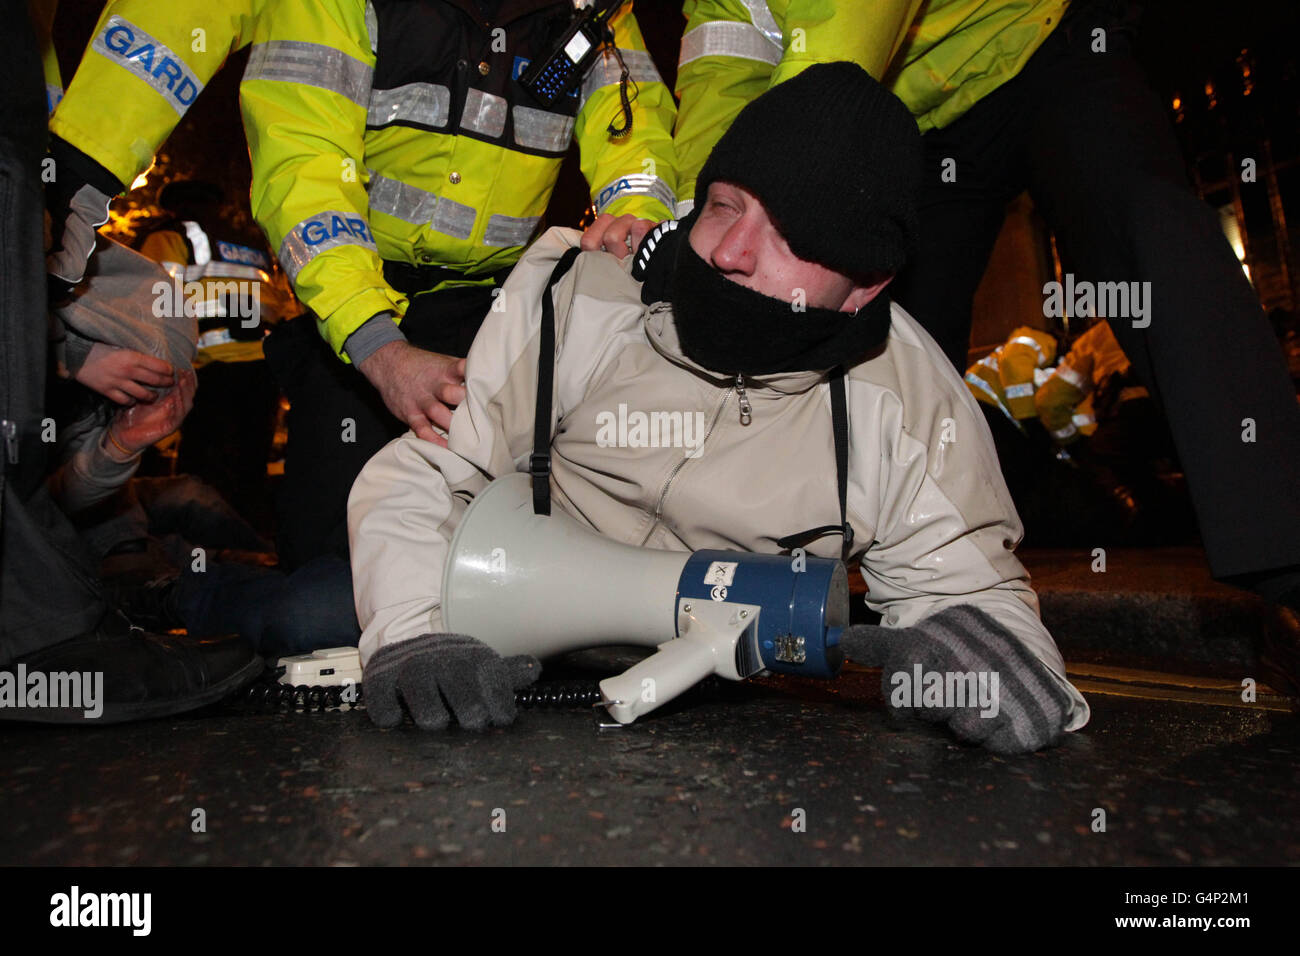 Gardai rimuove i manifestanti anti anti anti austerità che hanno cercato di bloccare le porte della Leinster House a Dublino dopo che il ministro delle finanze Michael Noonan ha consegnato il suo bilancio agli edifici governativi, durante il secondo giorno del bilancio irlandese. Foto Stock